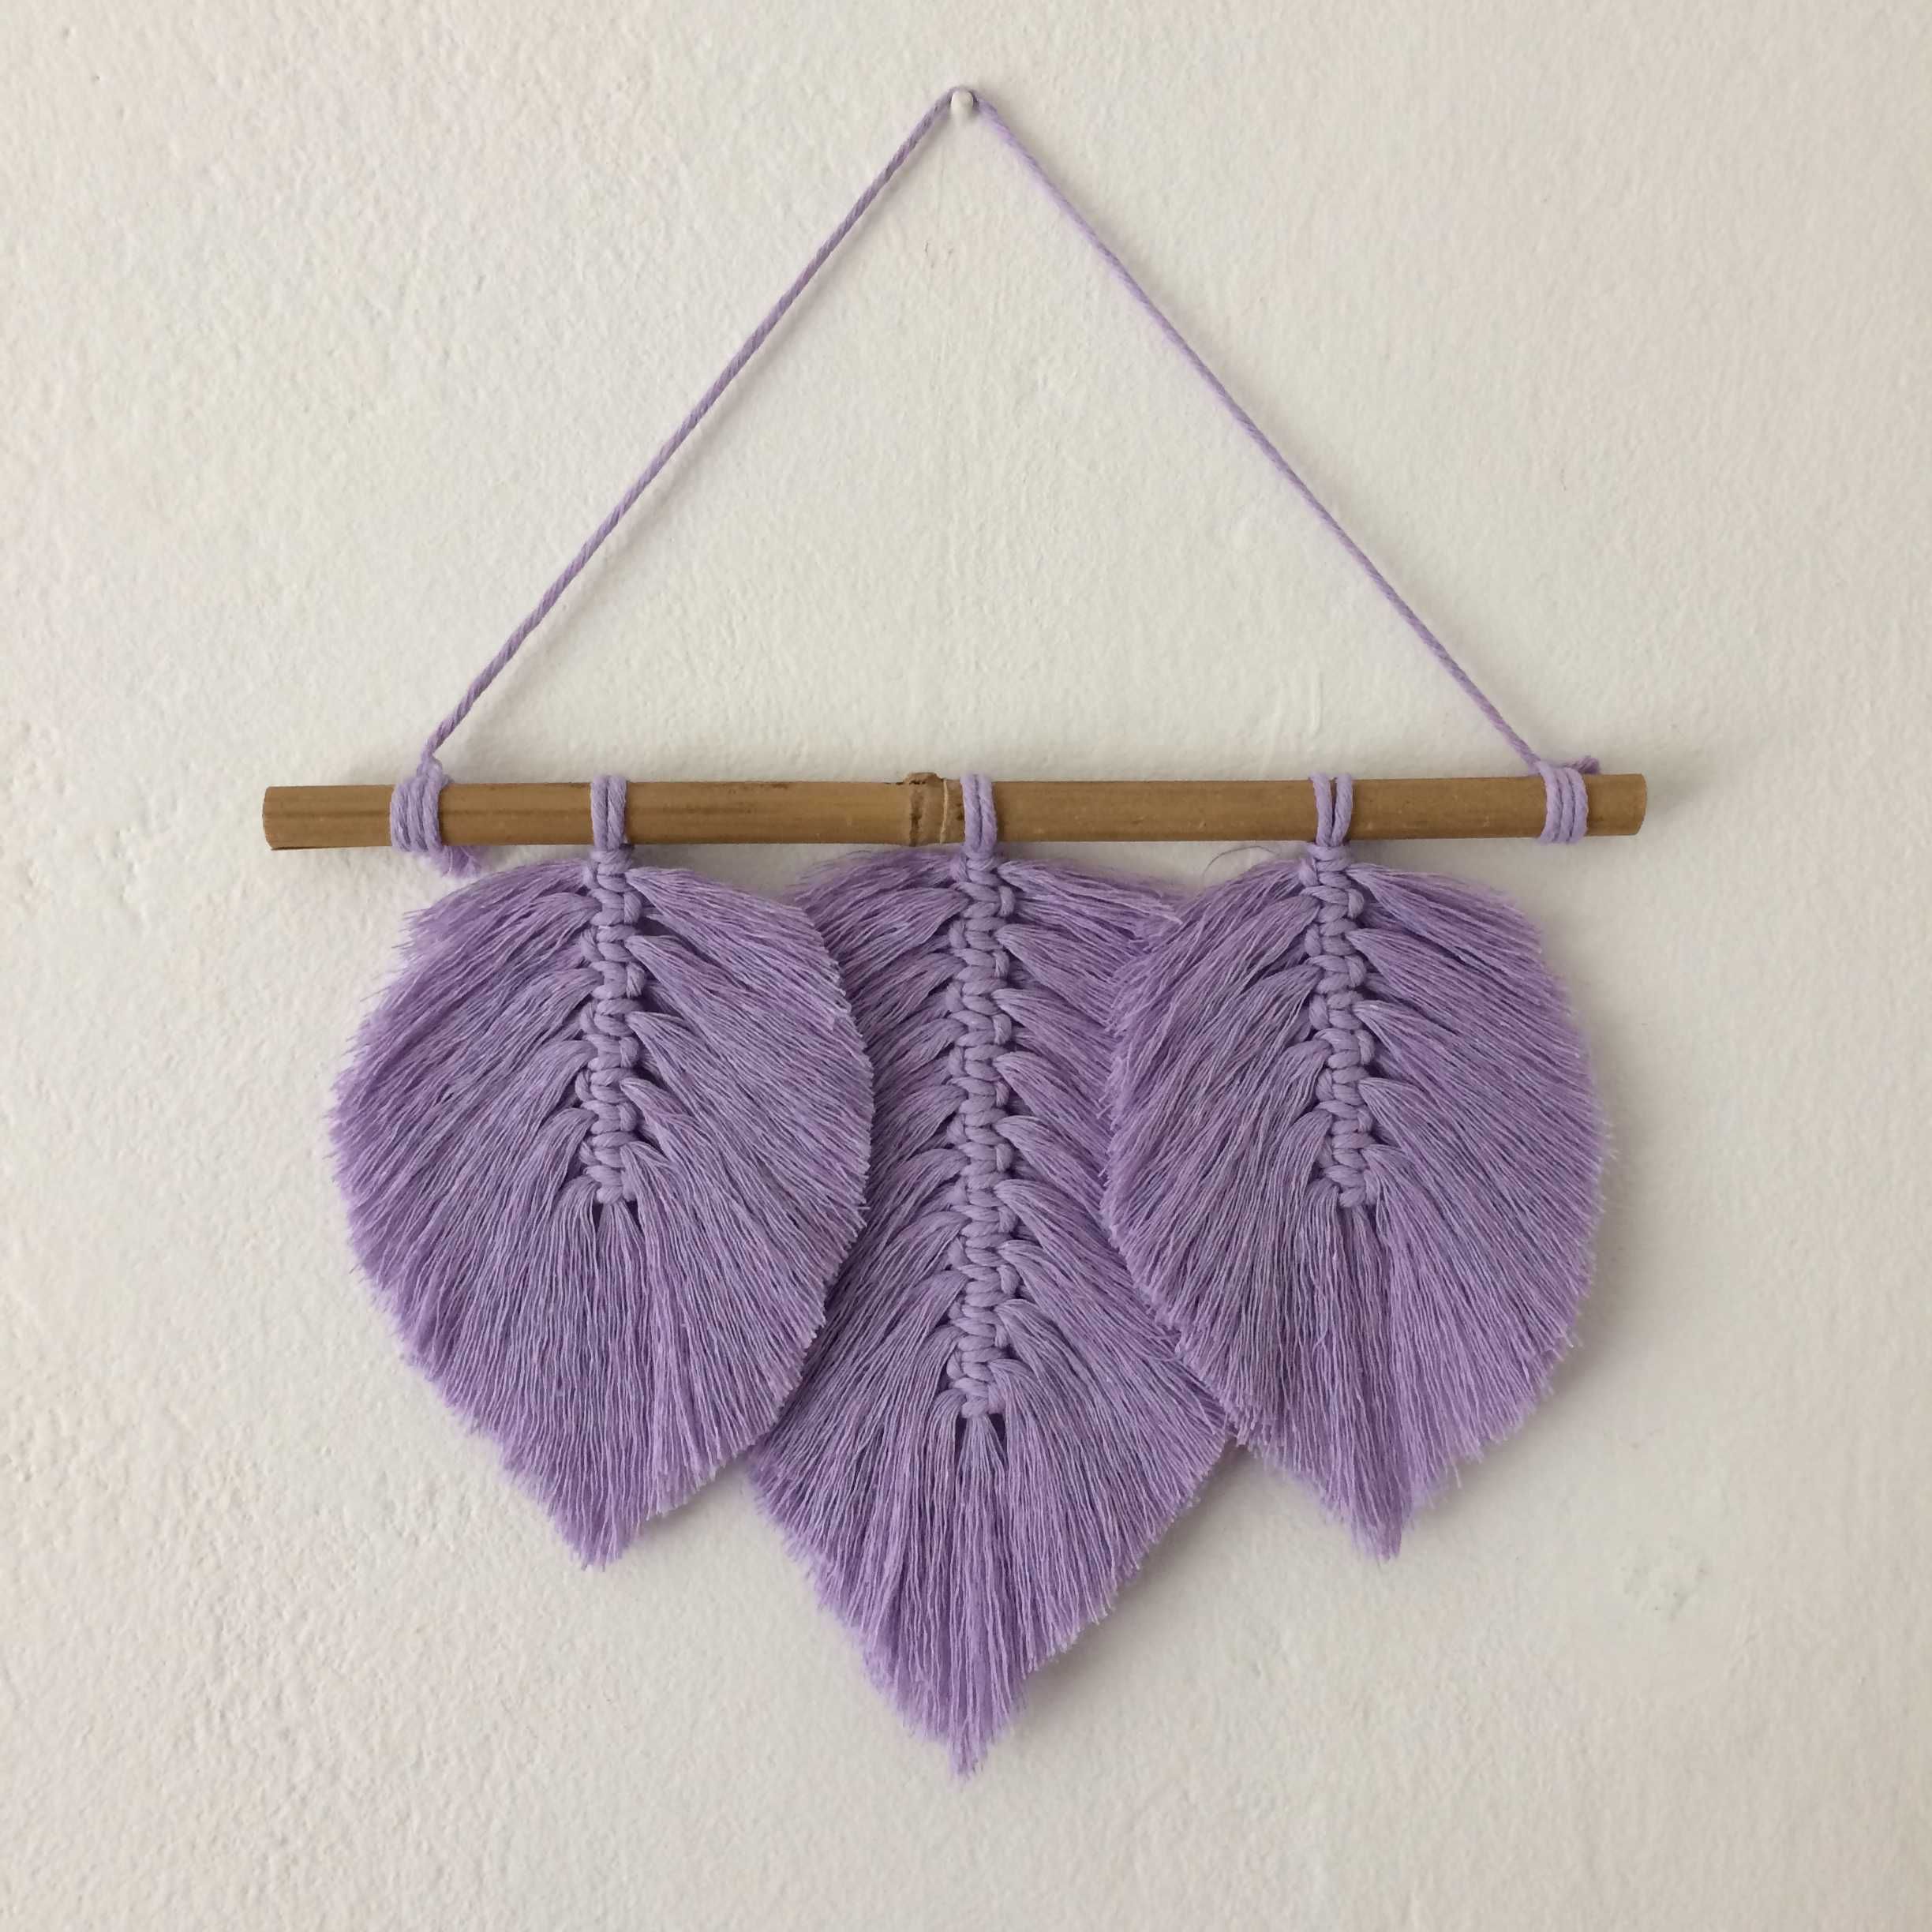 Makrama wrzos lawenda fioletowa liście pióra boho dekoracja handmade